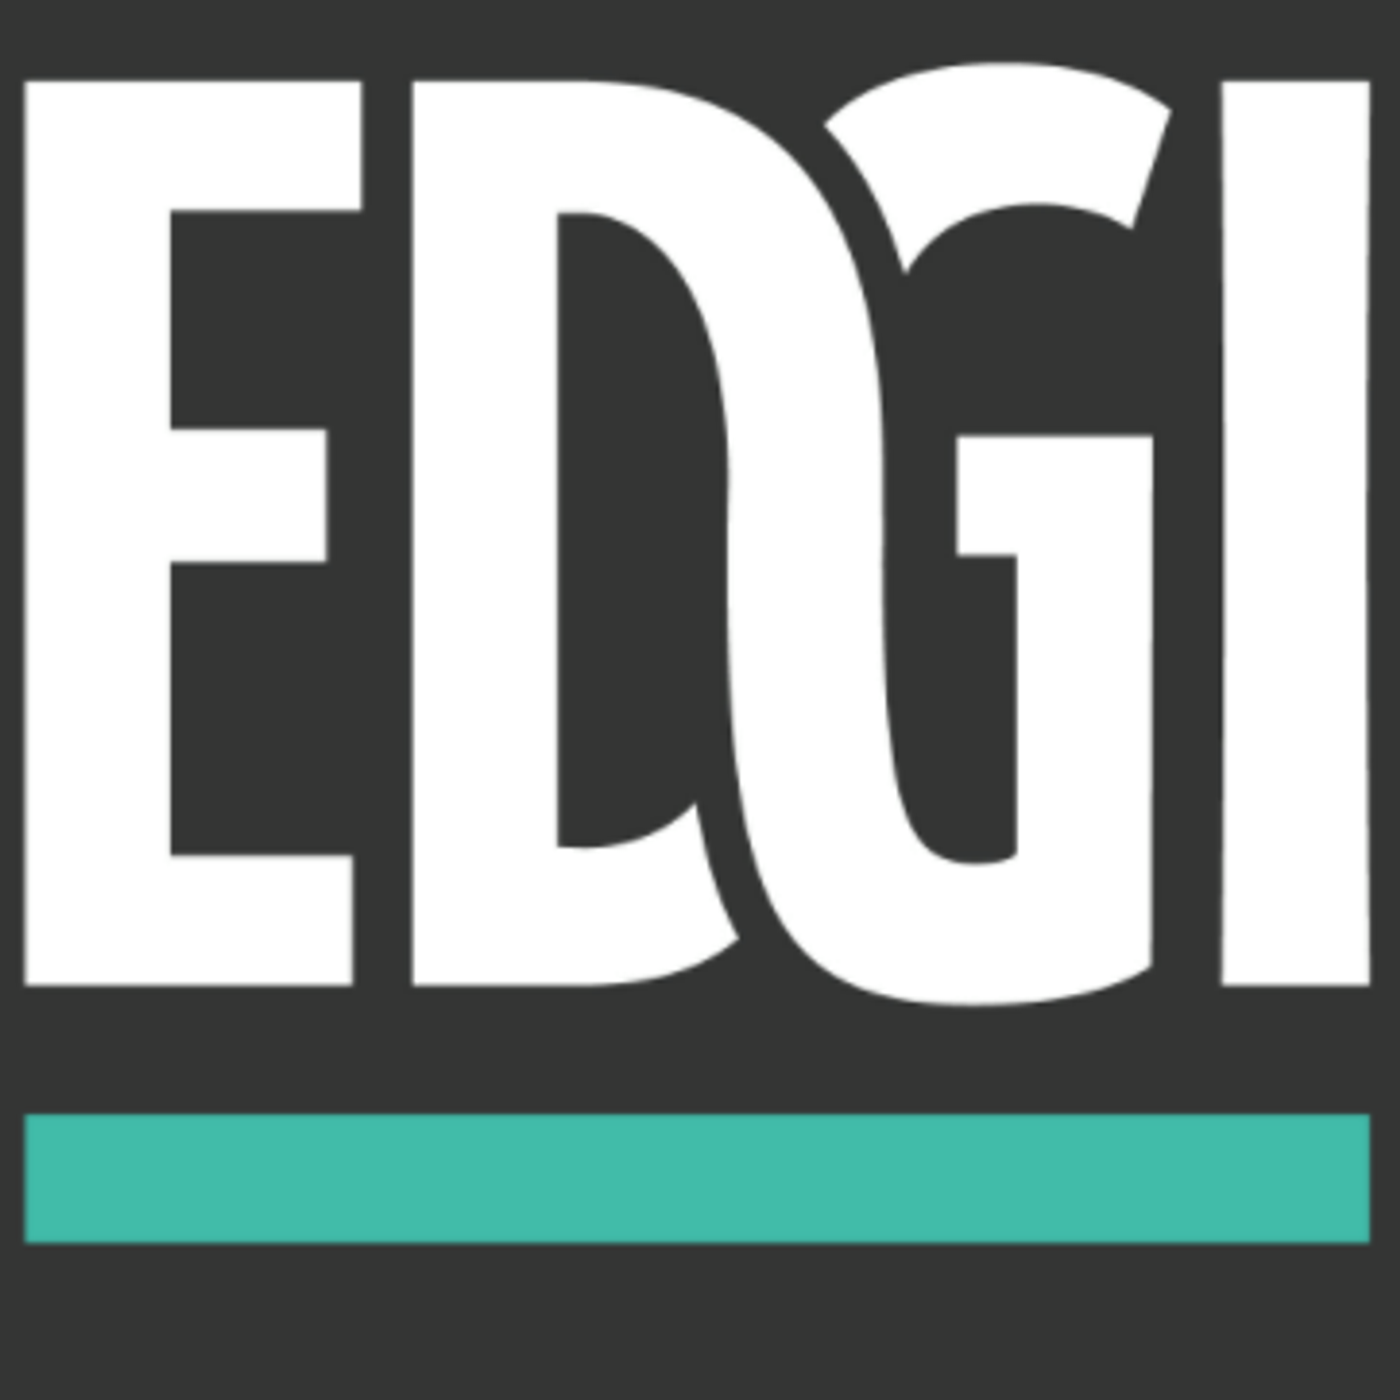 EDGI logo, credit: EDGI